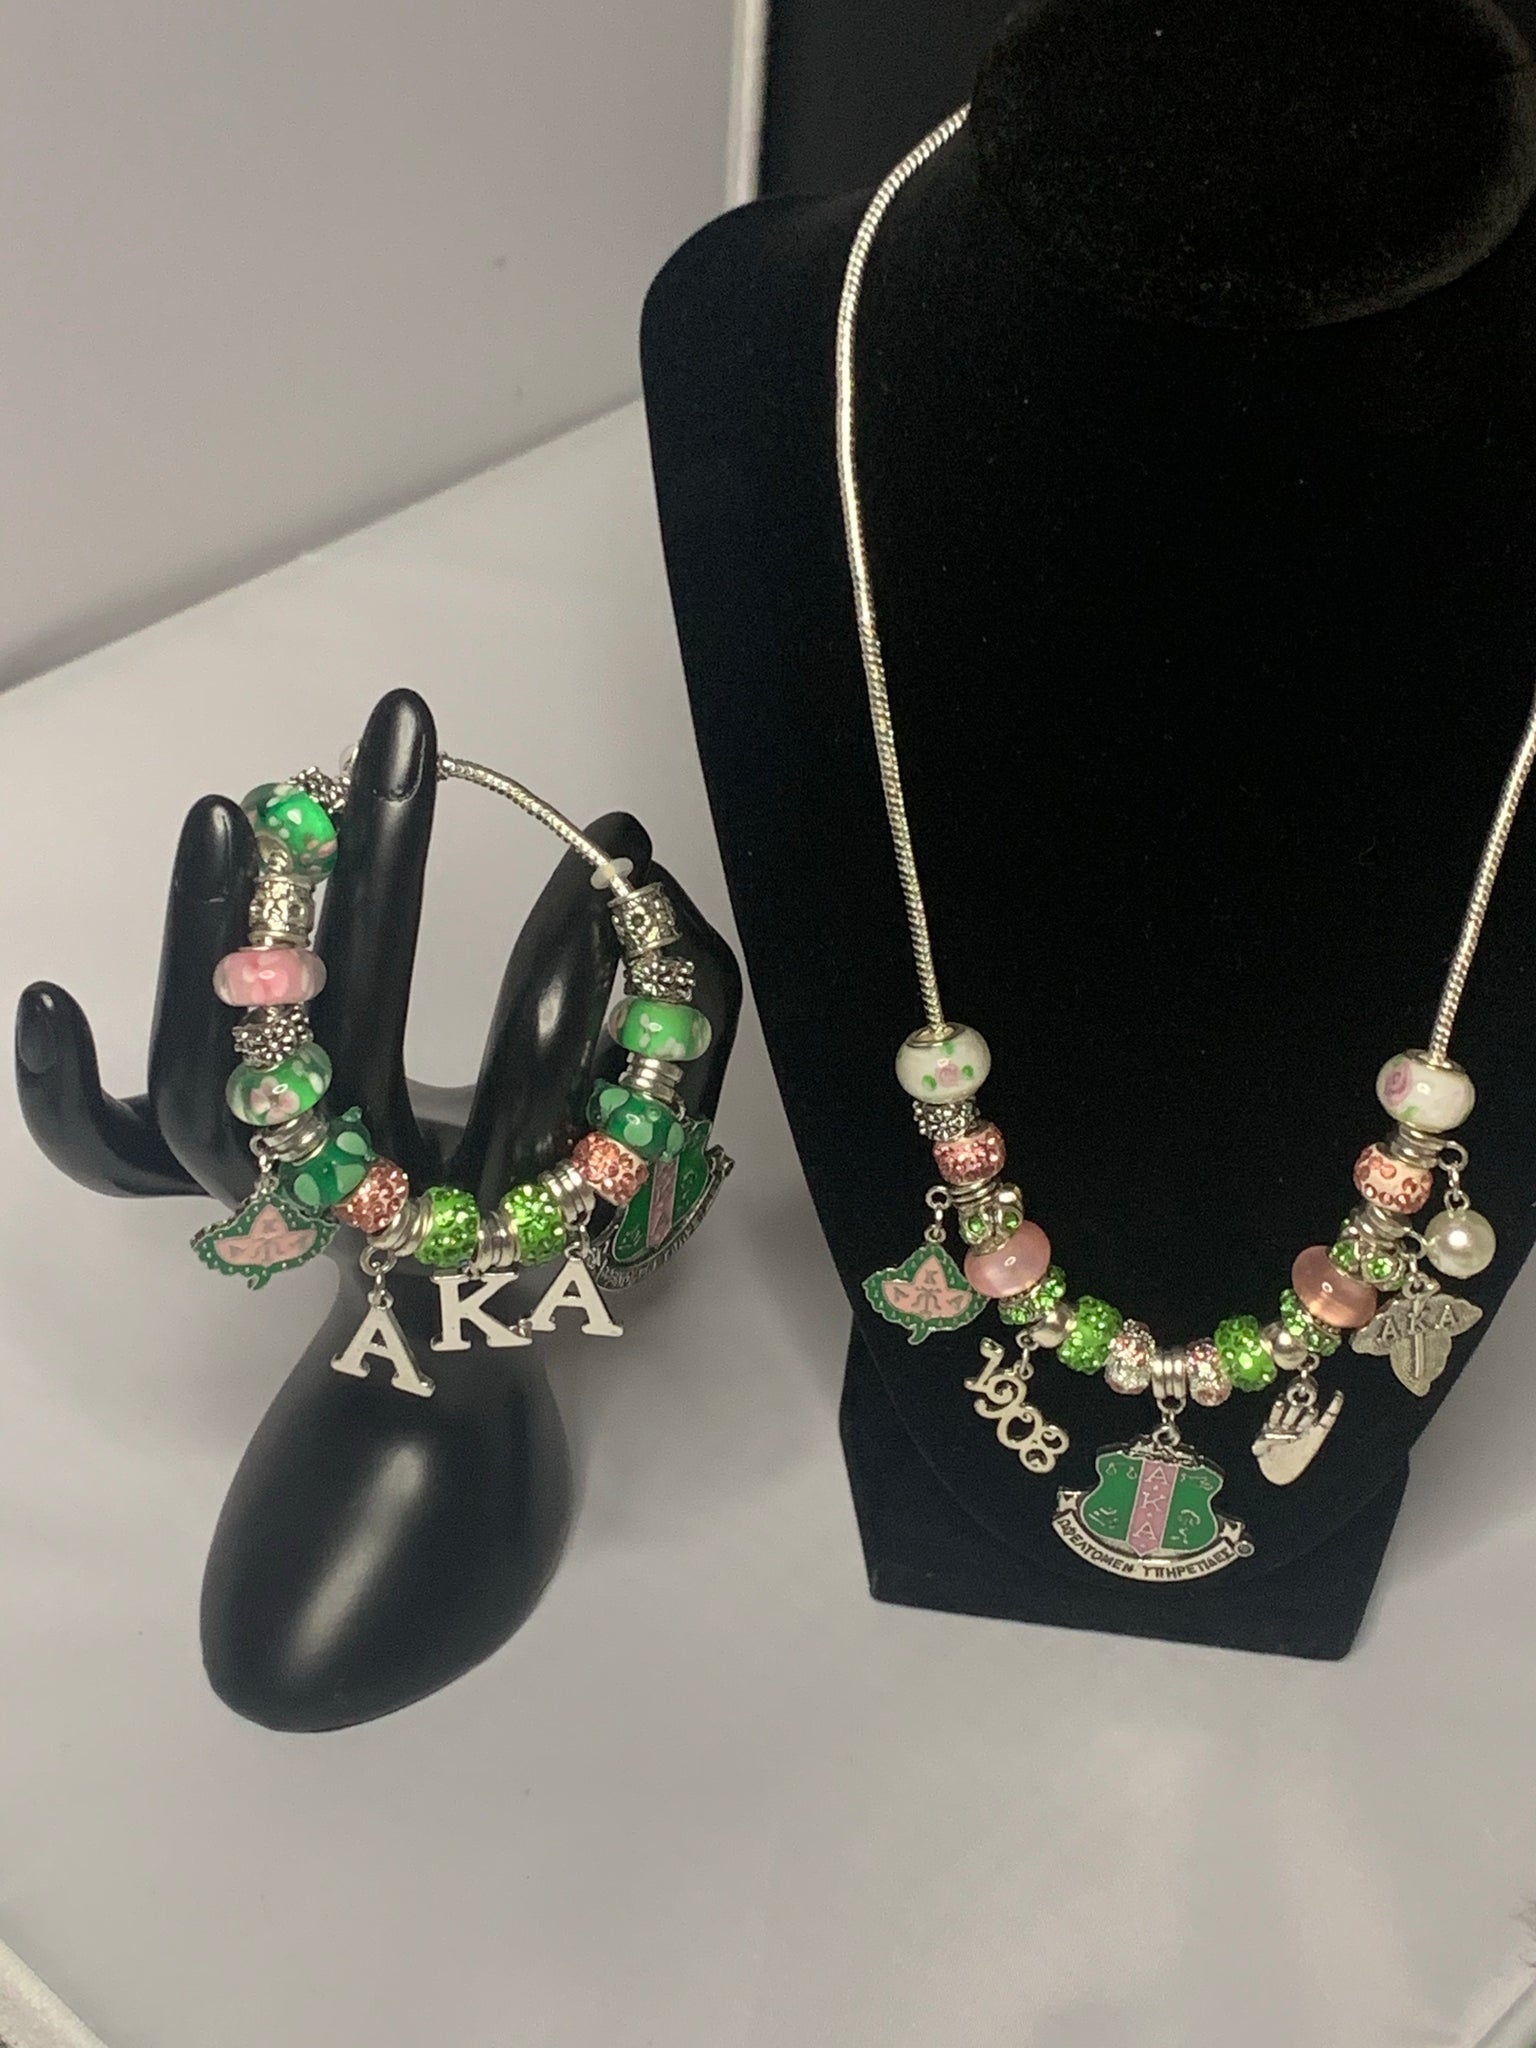 Aka Bracelet and Necklace Set